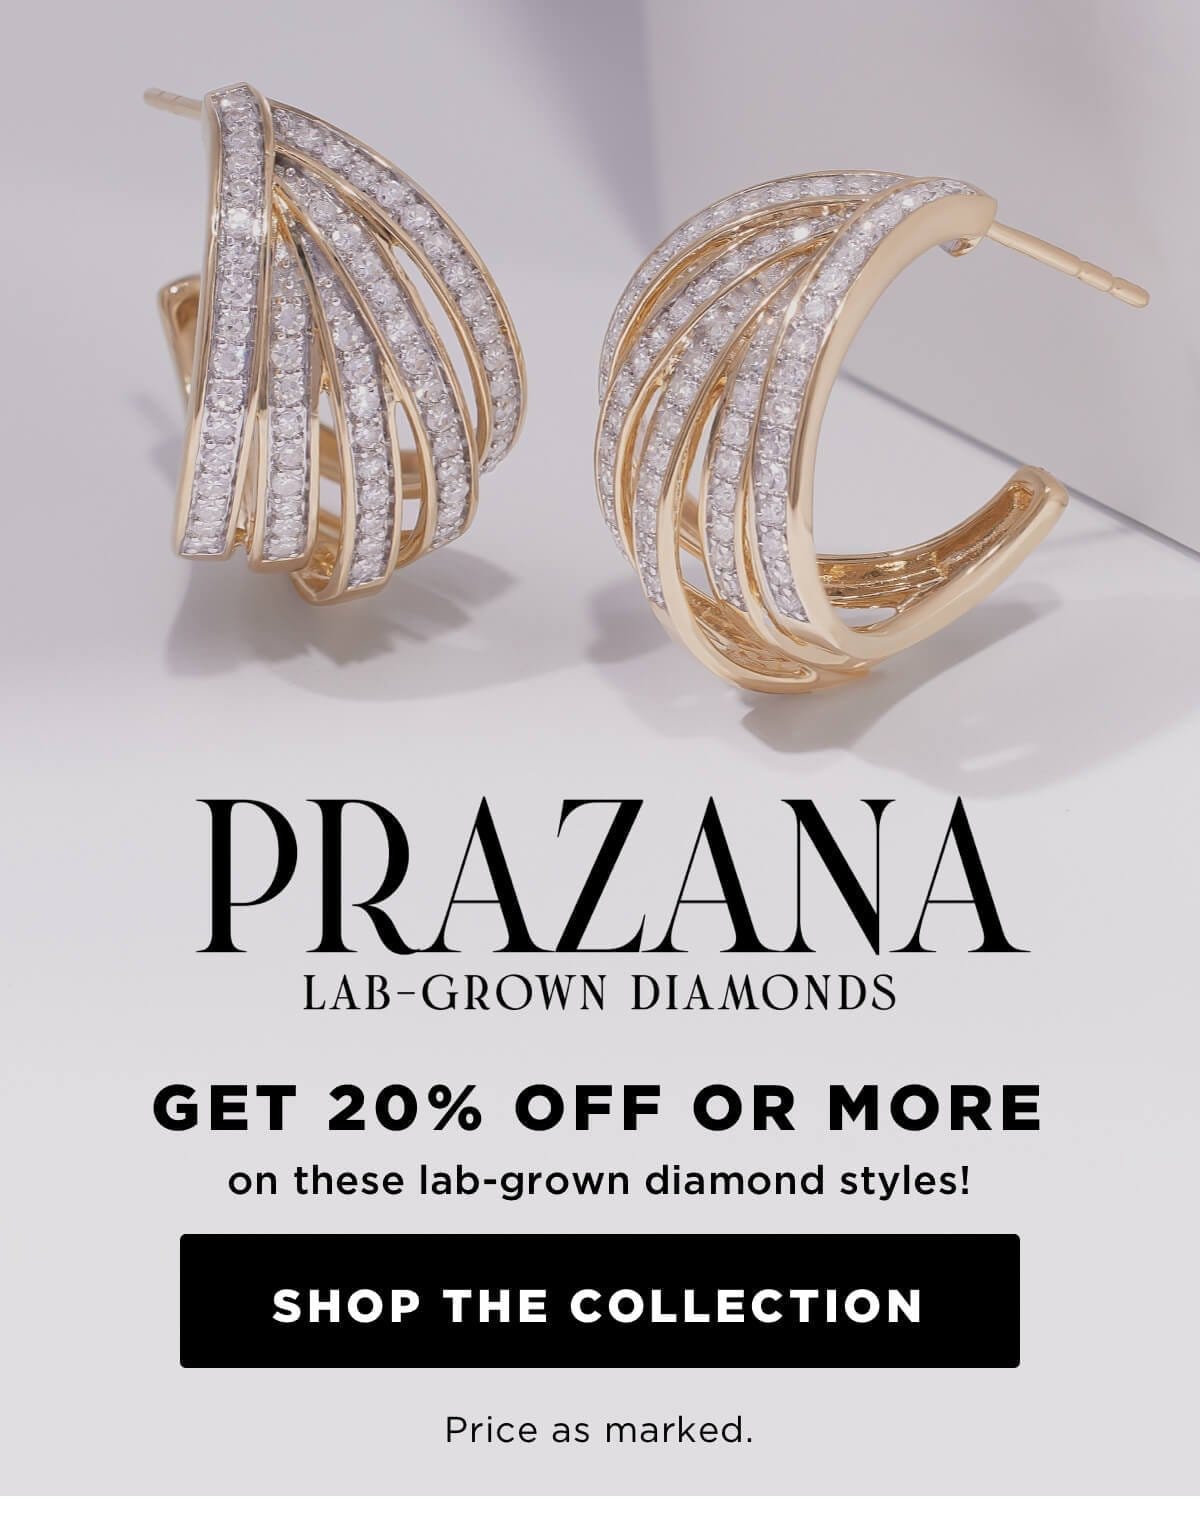 Shop Prazana Lab-Grown Diamond Jewelry 20% off. Price as marked